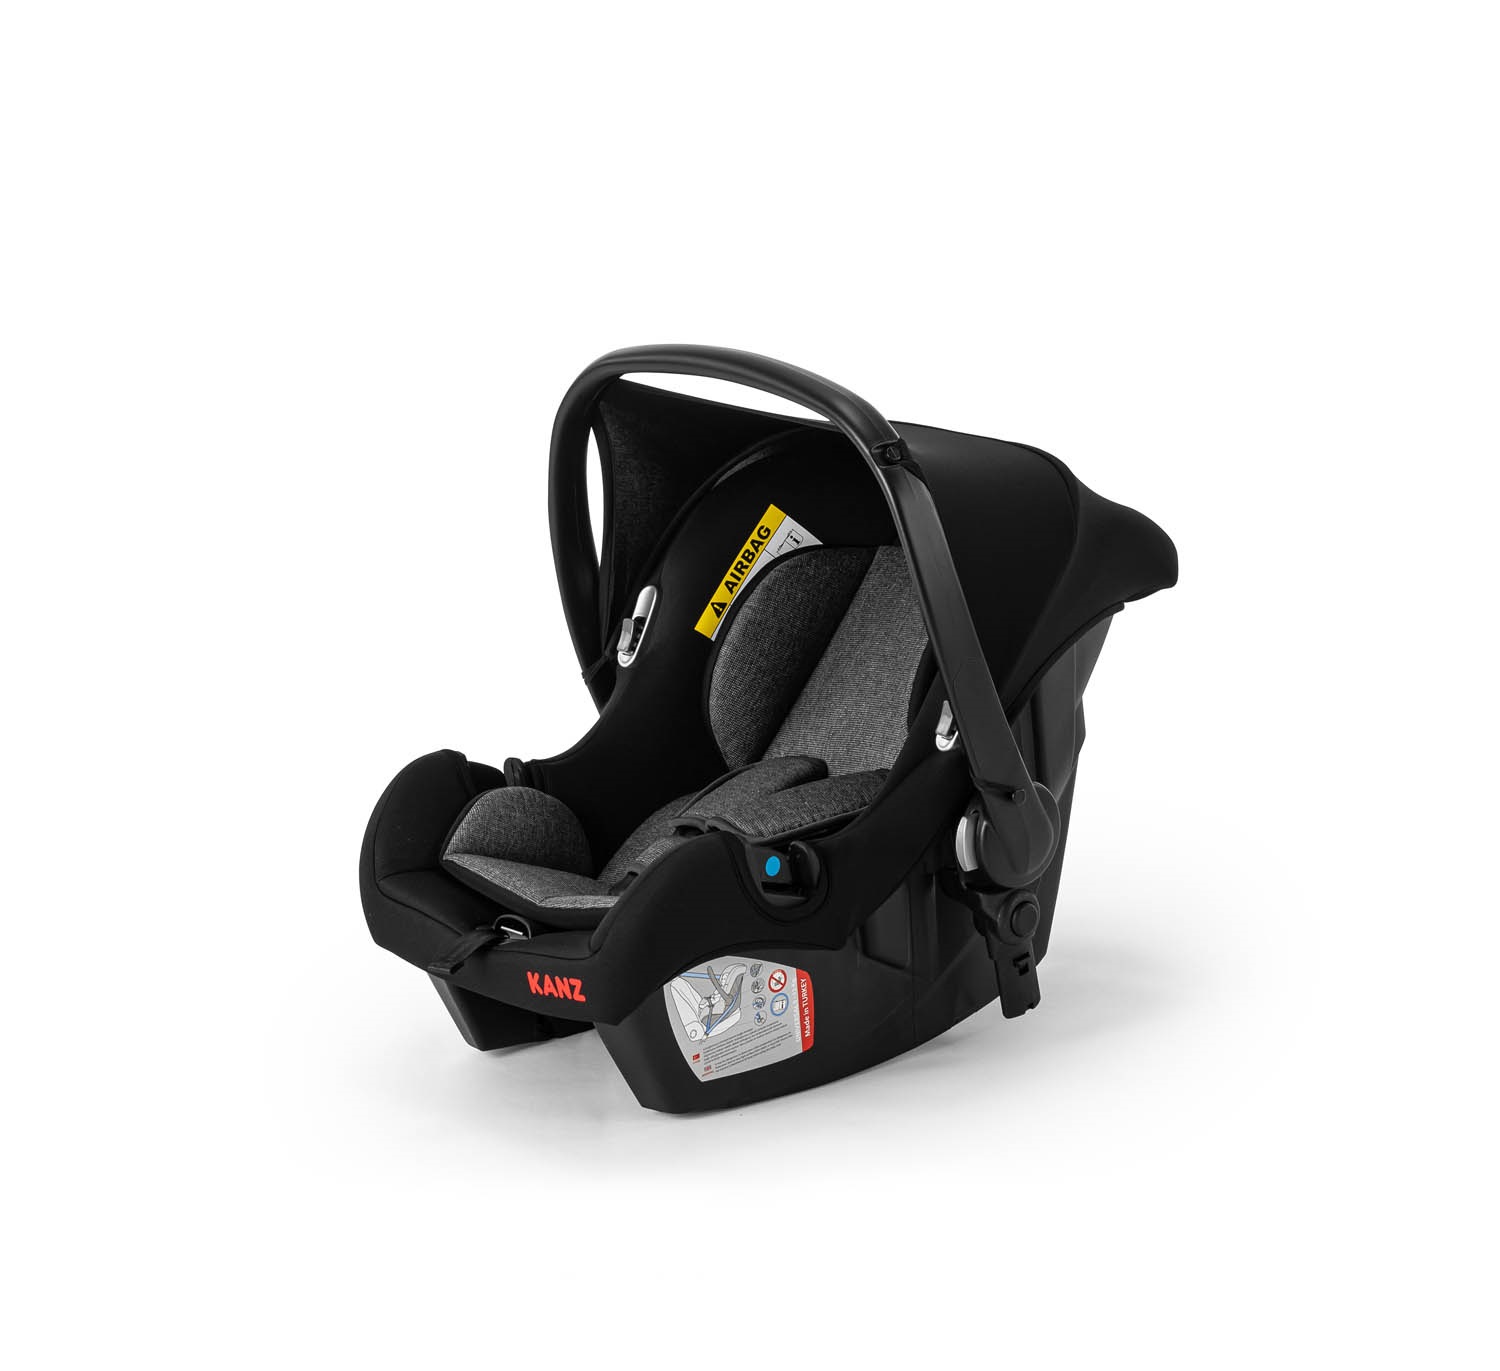 KANZ S - GO Travel Sistem Bebek Arabası Füme